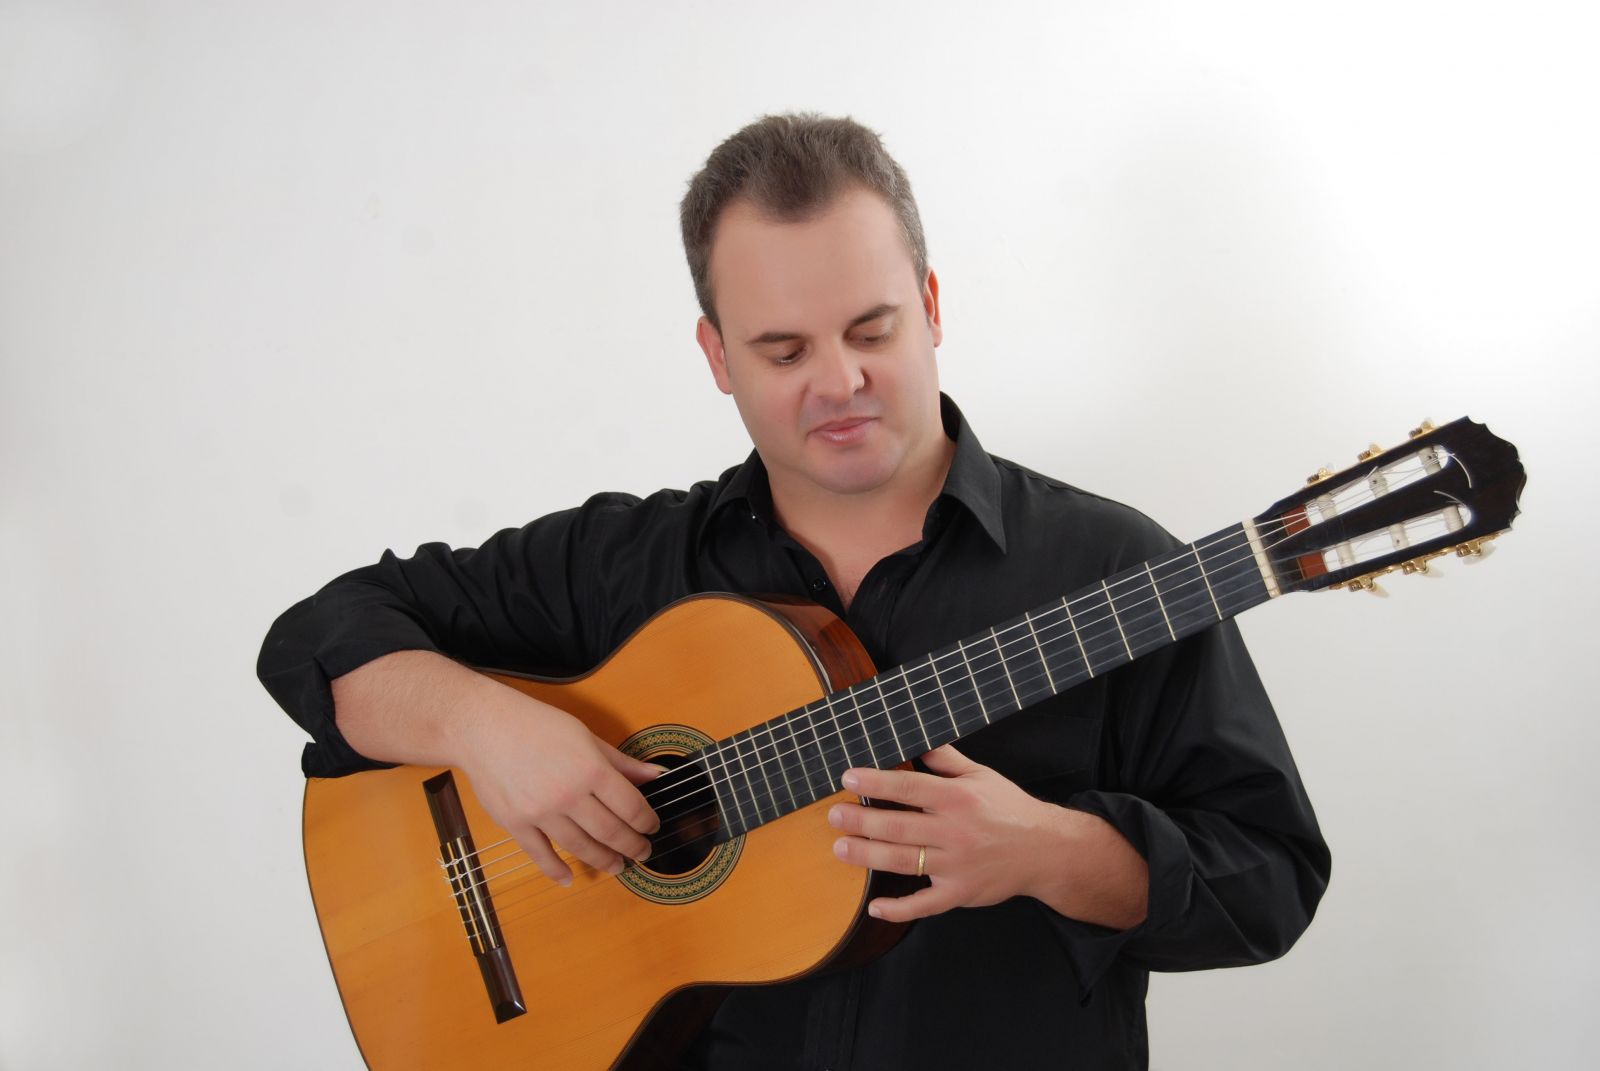 Festival de violão do Espírito Santo começa nesta quarta (11) - Moacyr Teixeira Neto